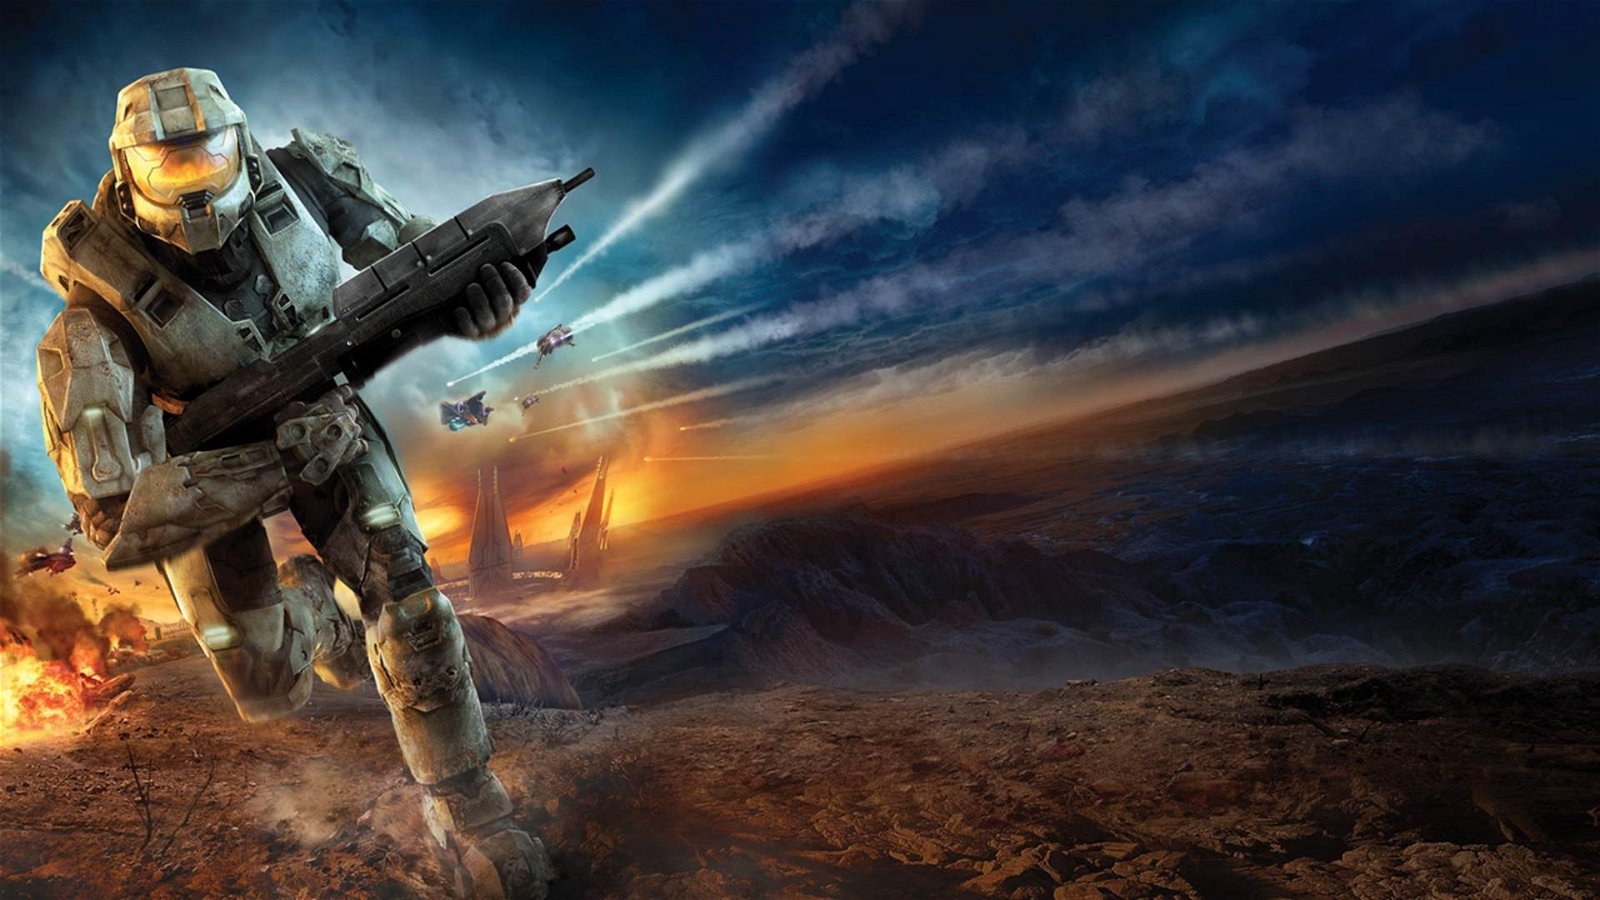 Halo 3 per PC ha una data d'uscita, e arriva prestissimo